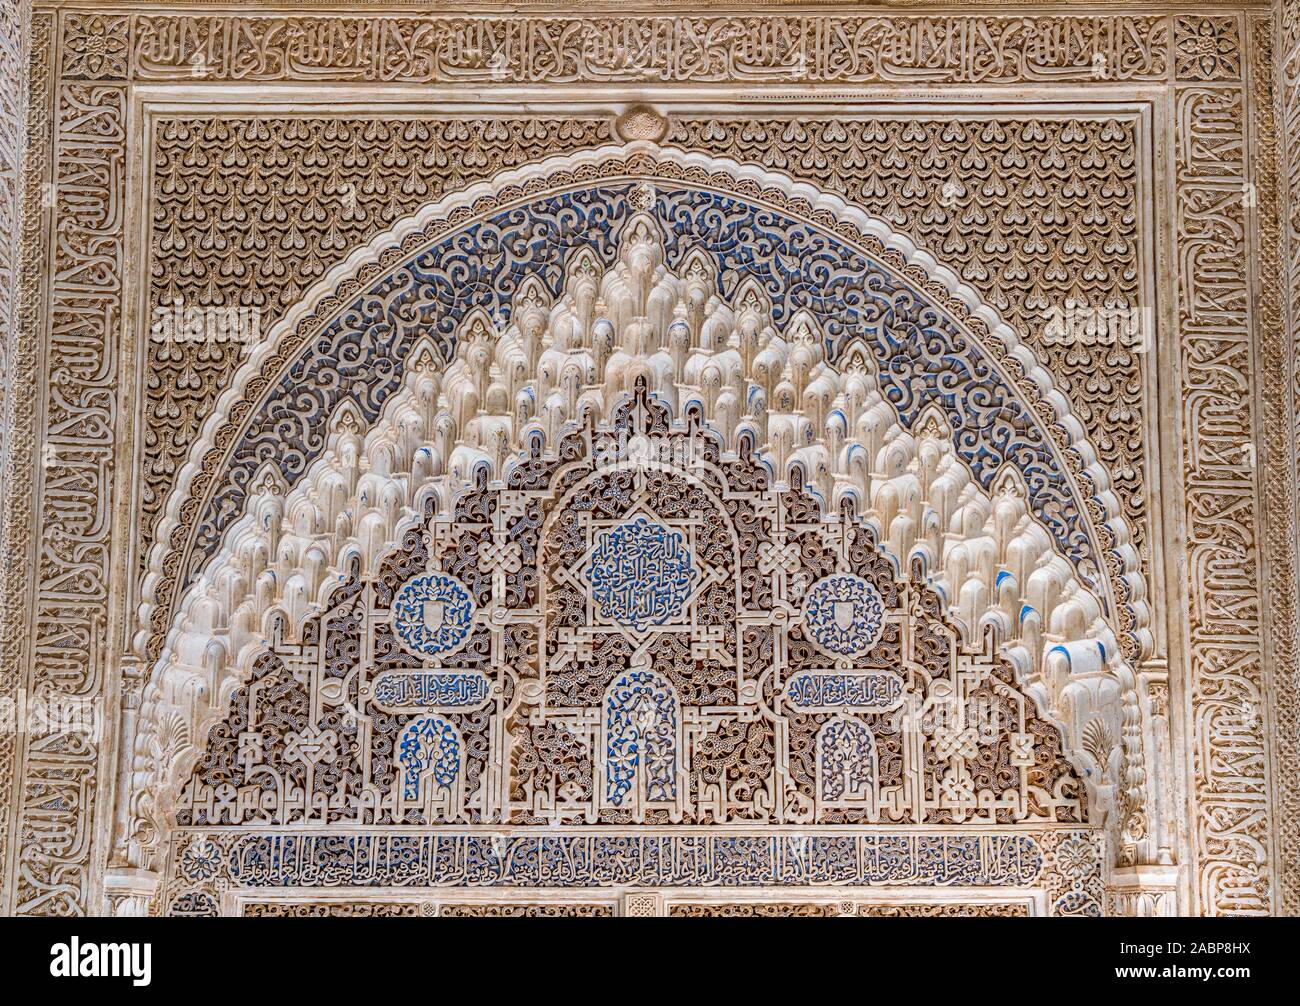 Finamente decorado las paredes en la Alhambra de Granada con inscripciones en árabe. Andalucía, España. Junio-03-2019 Foto de stock